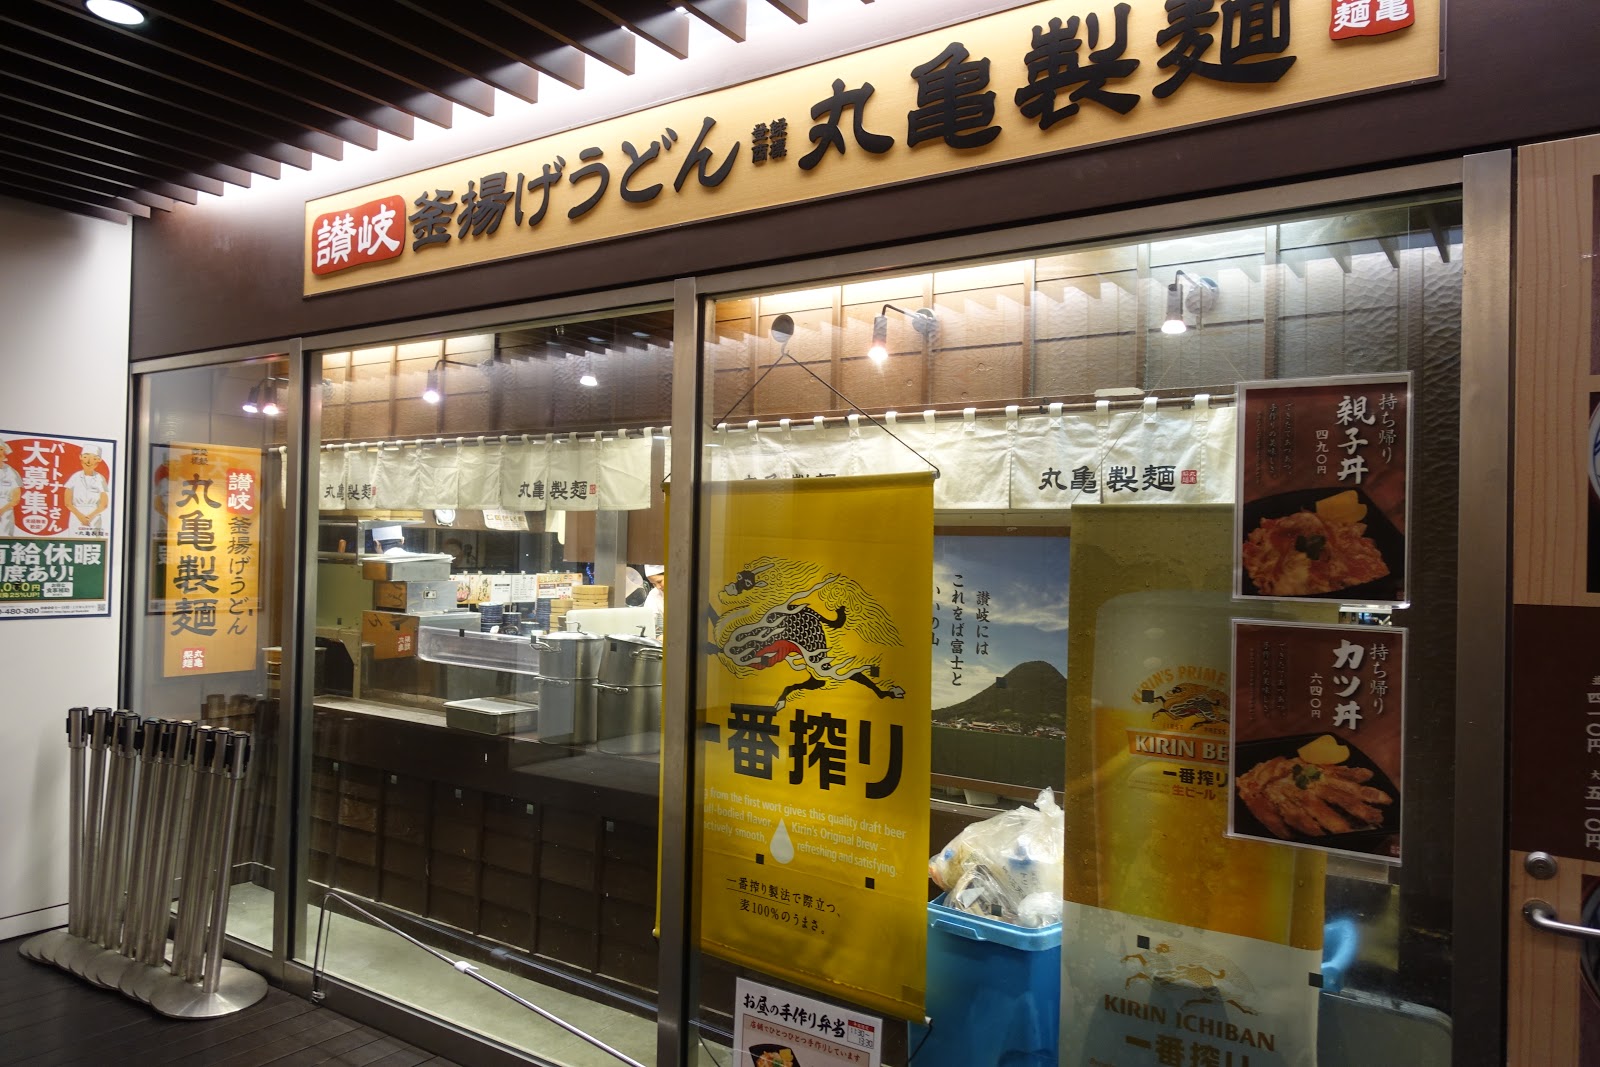 タケマシュラン 丸亀製麺 中野店限定のツマミ付き30分1 000円飲み放題で得た疎外感